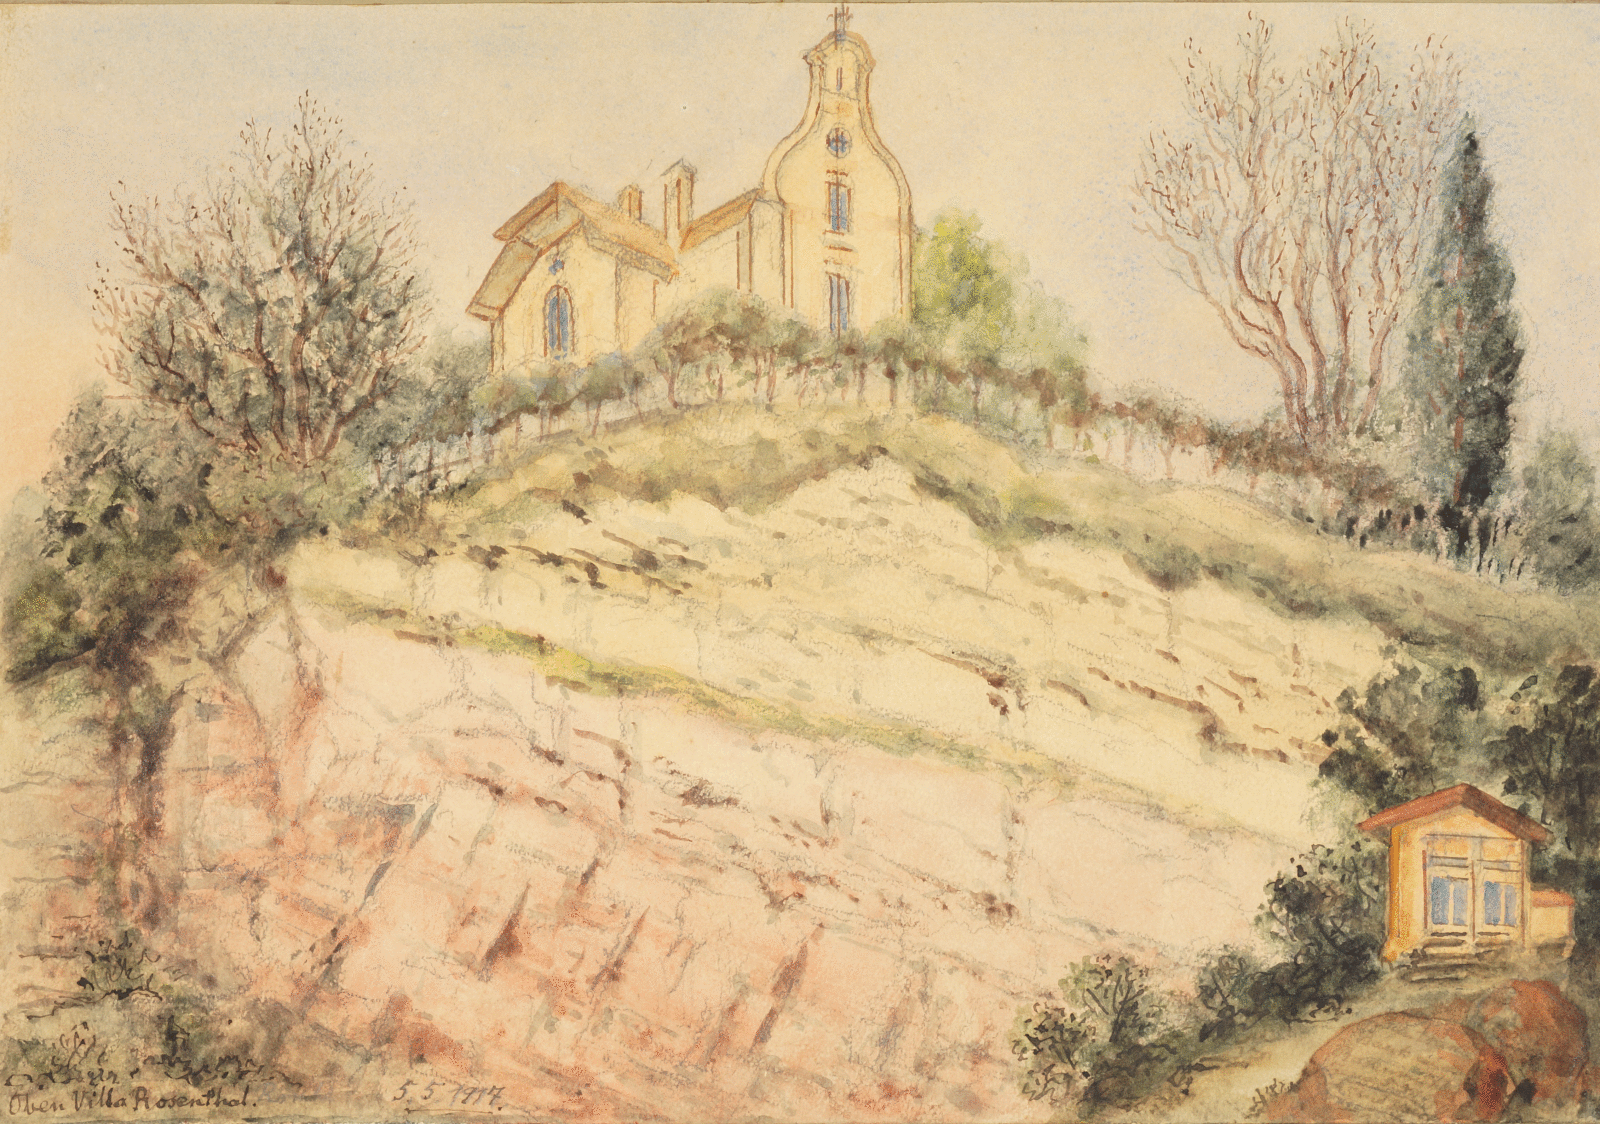 Das bunte Aquarell zeigt die Villa Rosenthal in Untersicht auf einem bilddominierenden Felsen umgeben von Gebüsch. Rechts am Bildrand ist ein kleines Gartenhaus zu sehen, dass kräftiger koloriert ist als das restliche Bild.